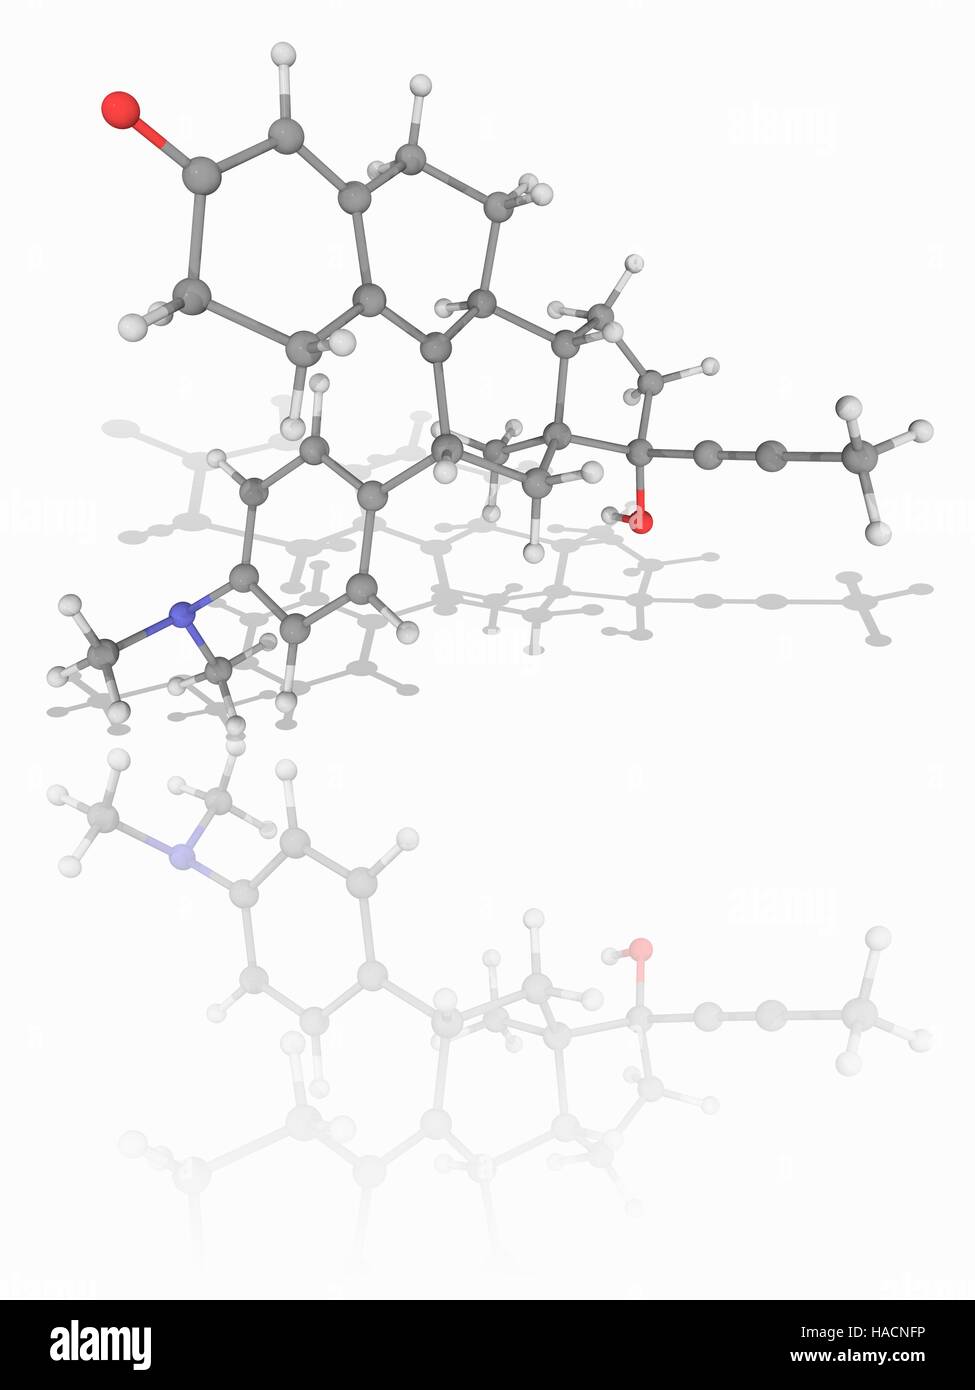 Mifepriston. Molekulares Modell des Progesteron-Rezeptor-Antagonist Medikament Mifepriston (C29. H35. N.O2), verwendet, um Abtreibungen zu induzieren und als ein Notfall-Kontrazeptivum. Atome als Kugeln dargestellt werden und sind farblich gekennzeichnet: Kohlenstoff (grau), Wasserstoff (weiß), Stickstoff (blau) und Sauerstoff (rot). Abbildung. Stockfoto